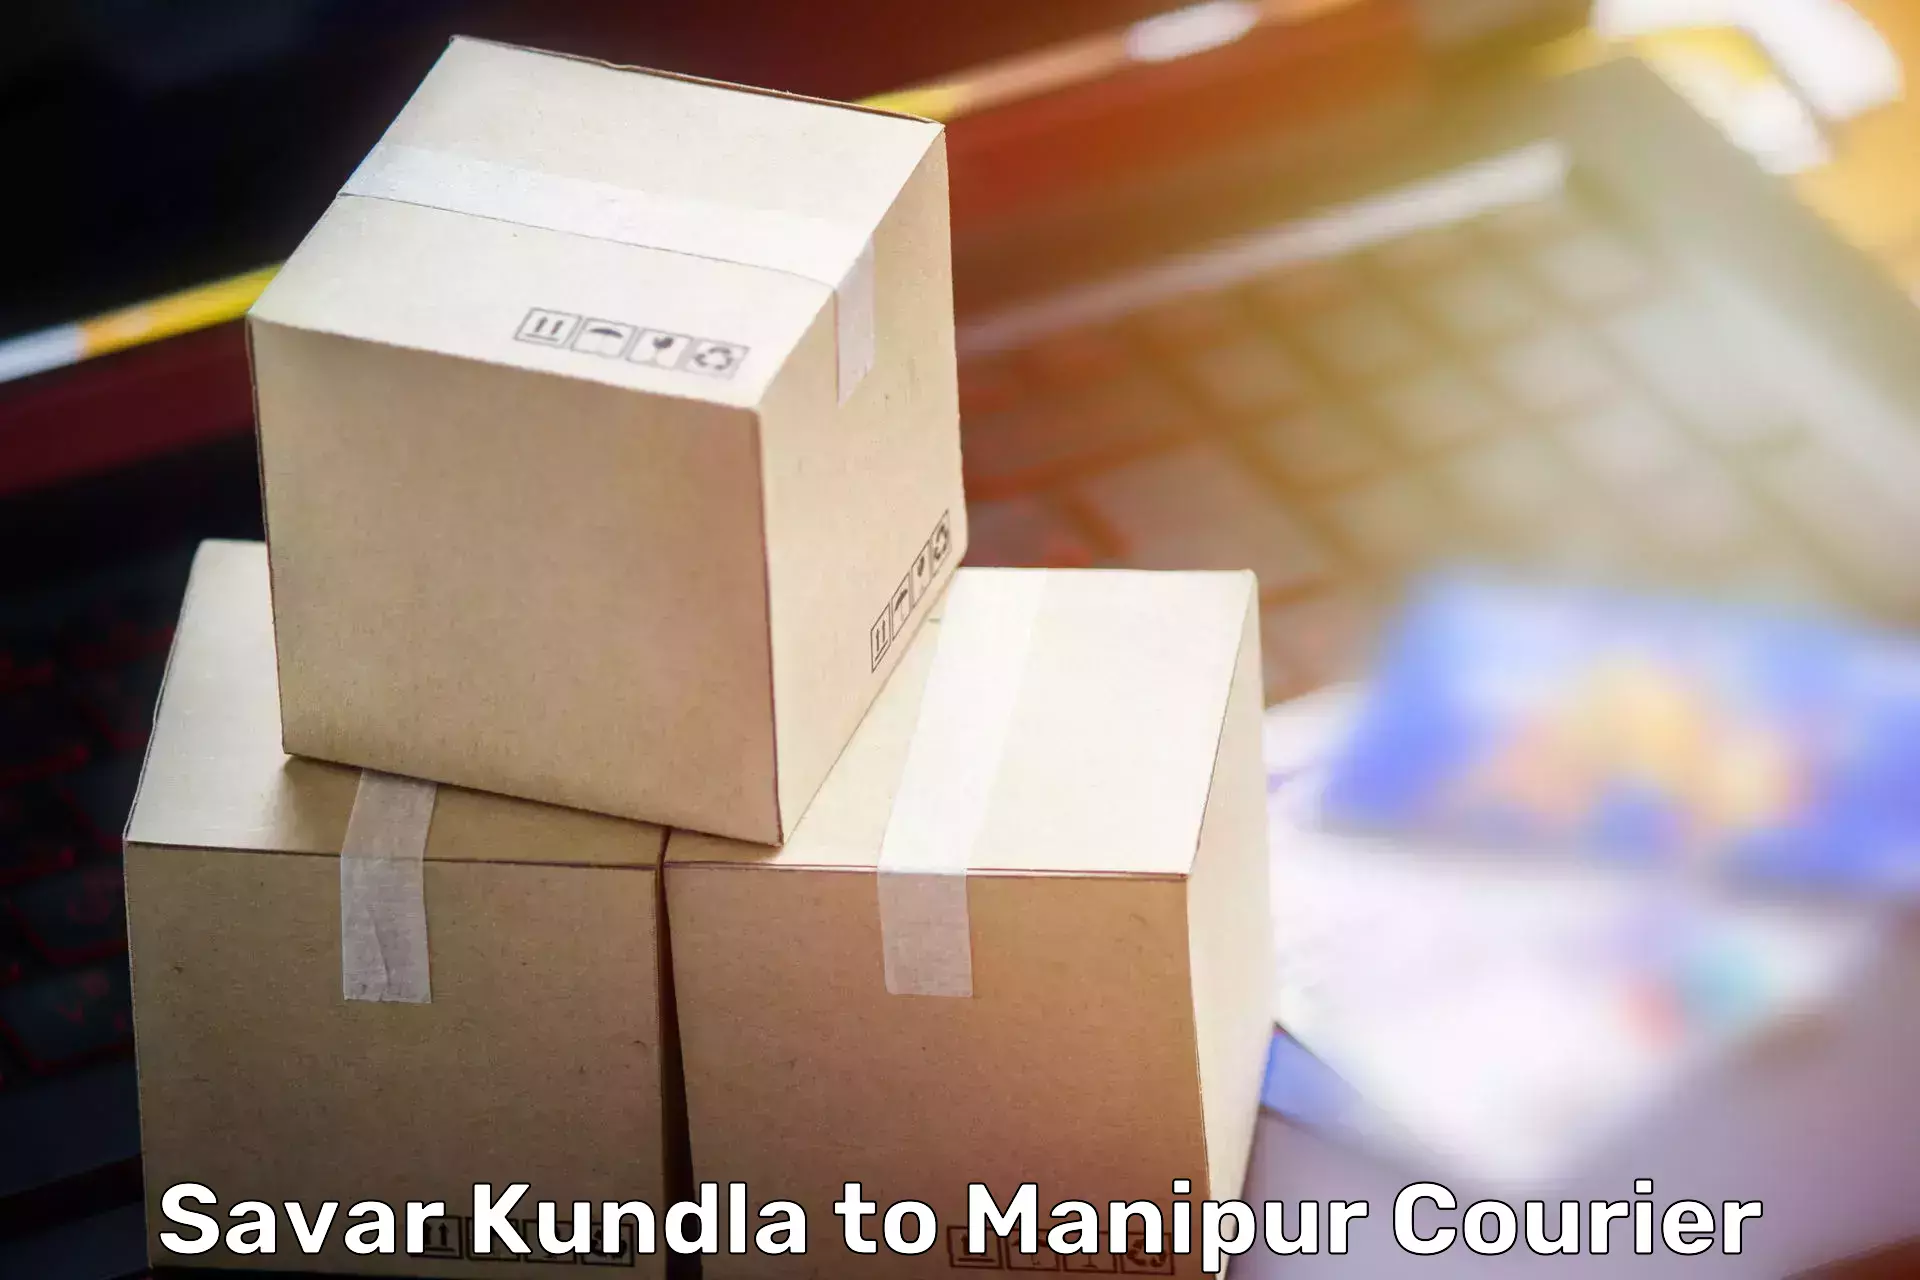 Specialized moving company Savar Kundla to Senapati